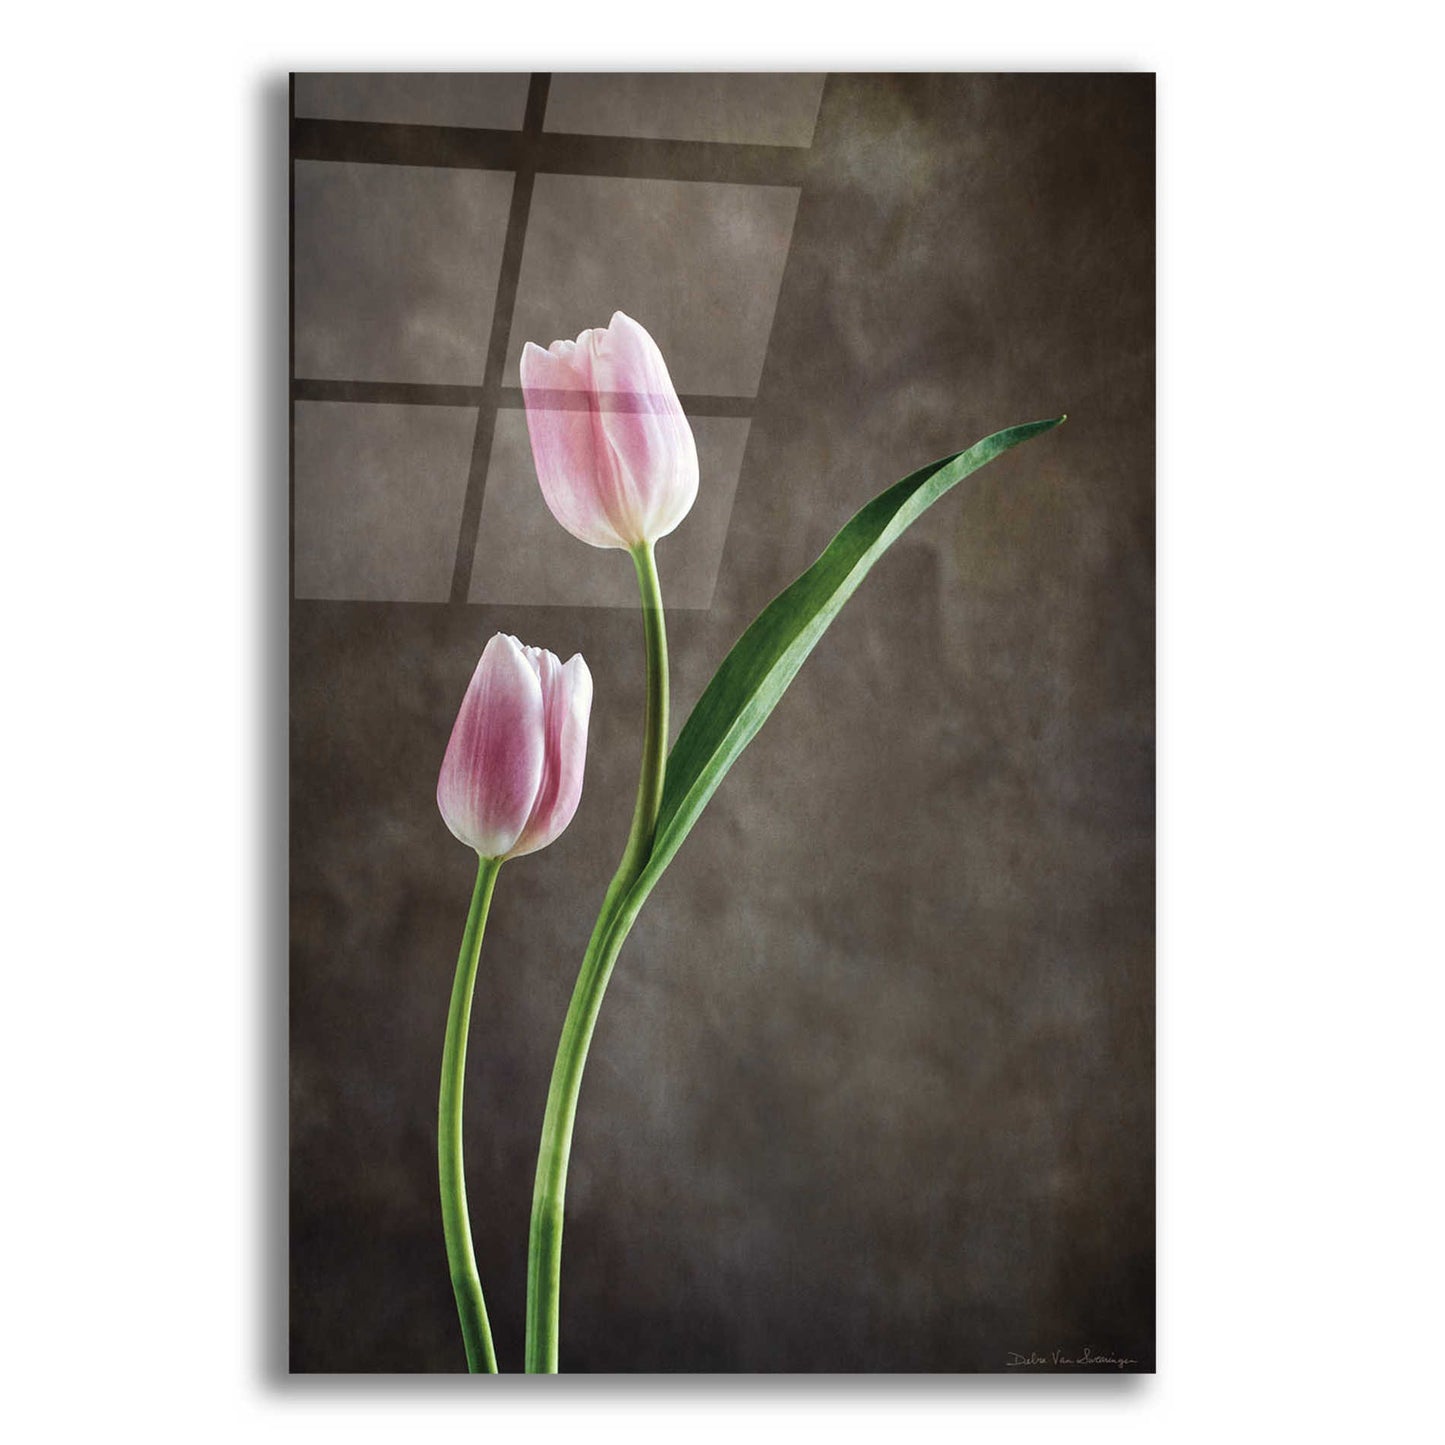 Epic Art 'Spring Tulips IV' by Debra Van Swearingen, Acrylic Glass Wall Art,12x18x1.1x0,18x26x1.1x0,26x40x1.74x0,40x60x1.74x0